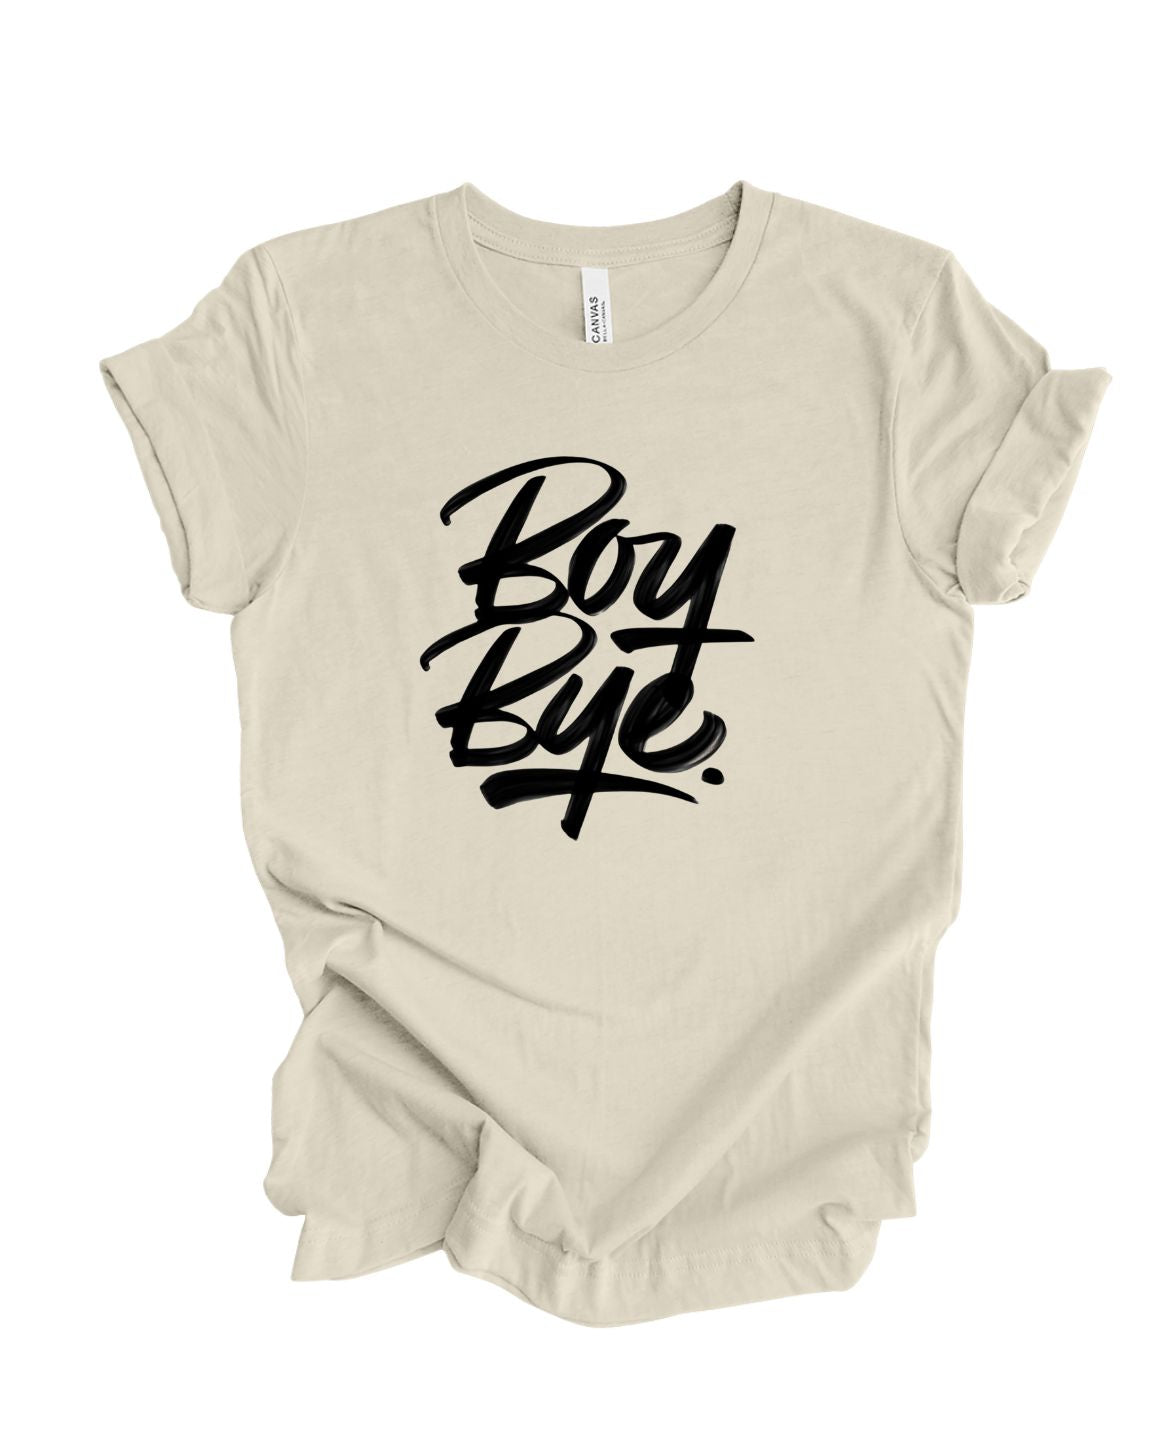 Boy Bye T-Shirt